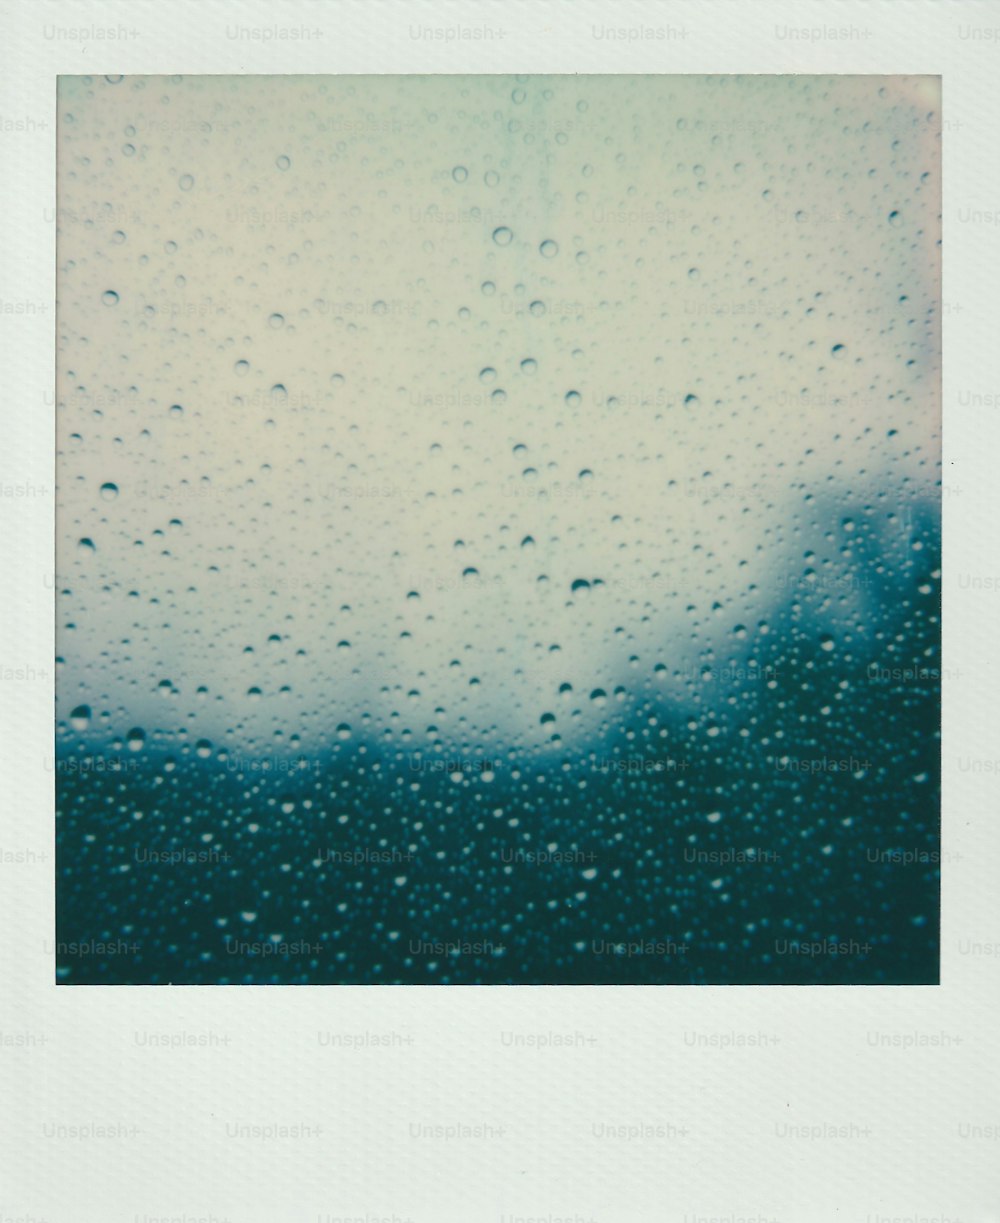 창문에 빗방울이 떨어지는 그림